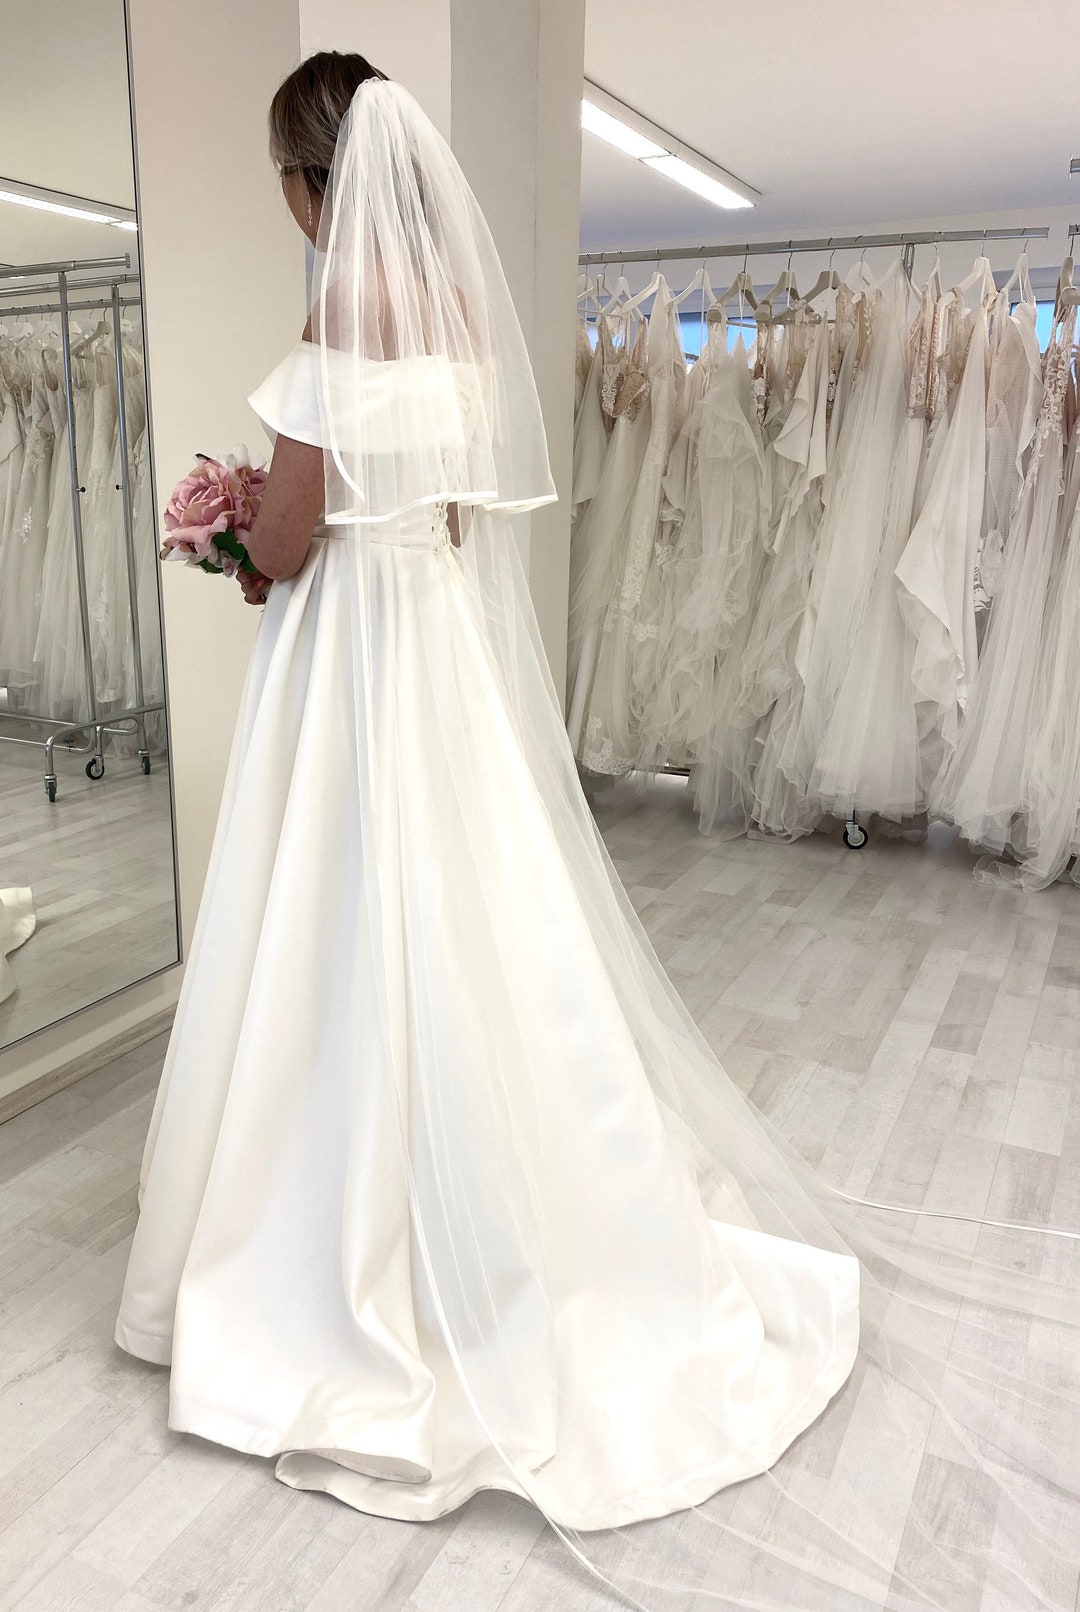 Wedding & Bridal Veils - WED2B